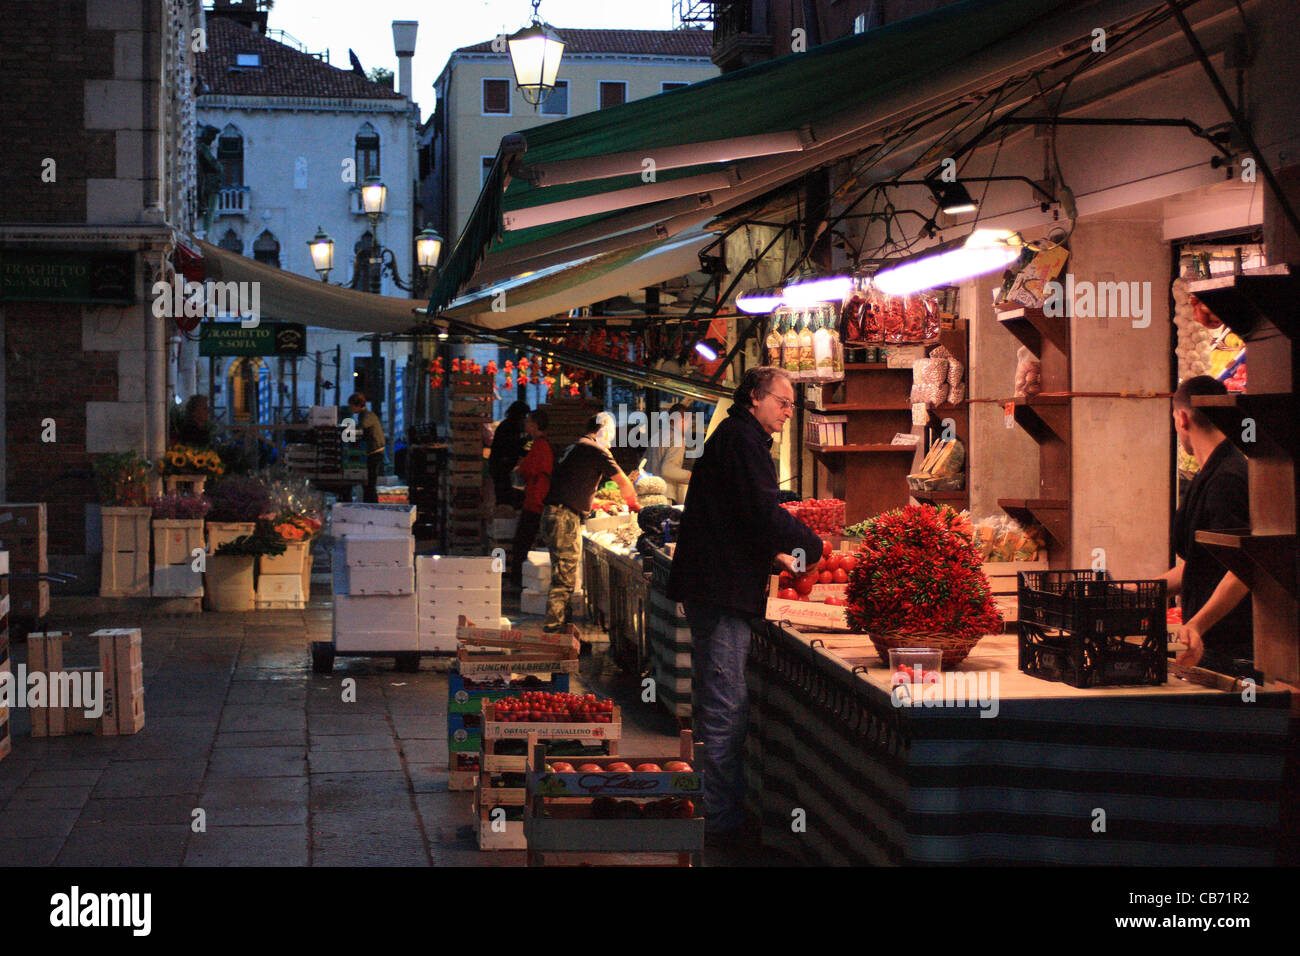 Tôt le matin - marché aux poissons et fruits de Rialto à Venise, Italie Banque D'Images